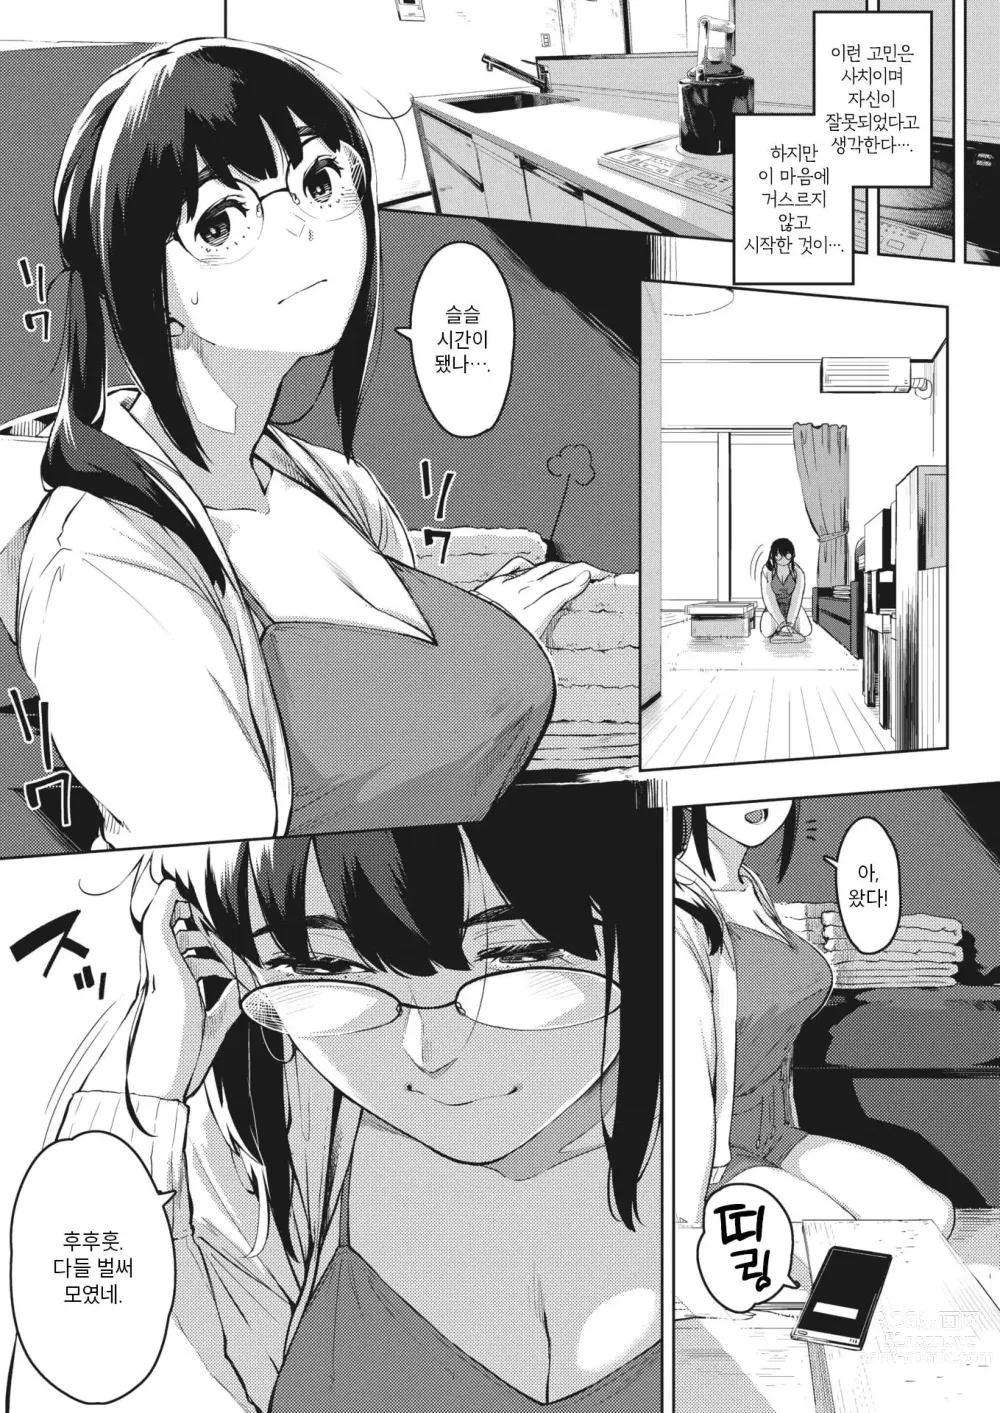 Page 6 of manga Hitozuma no Koukishin